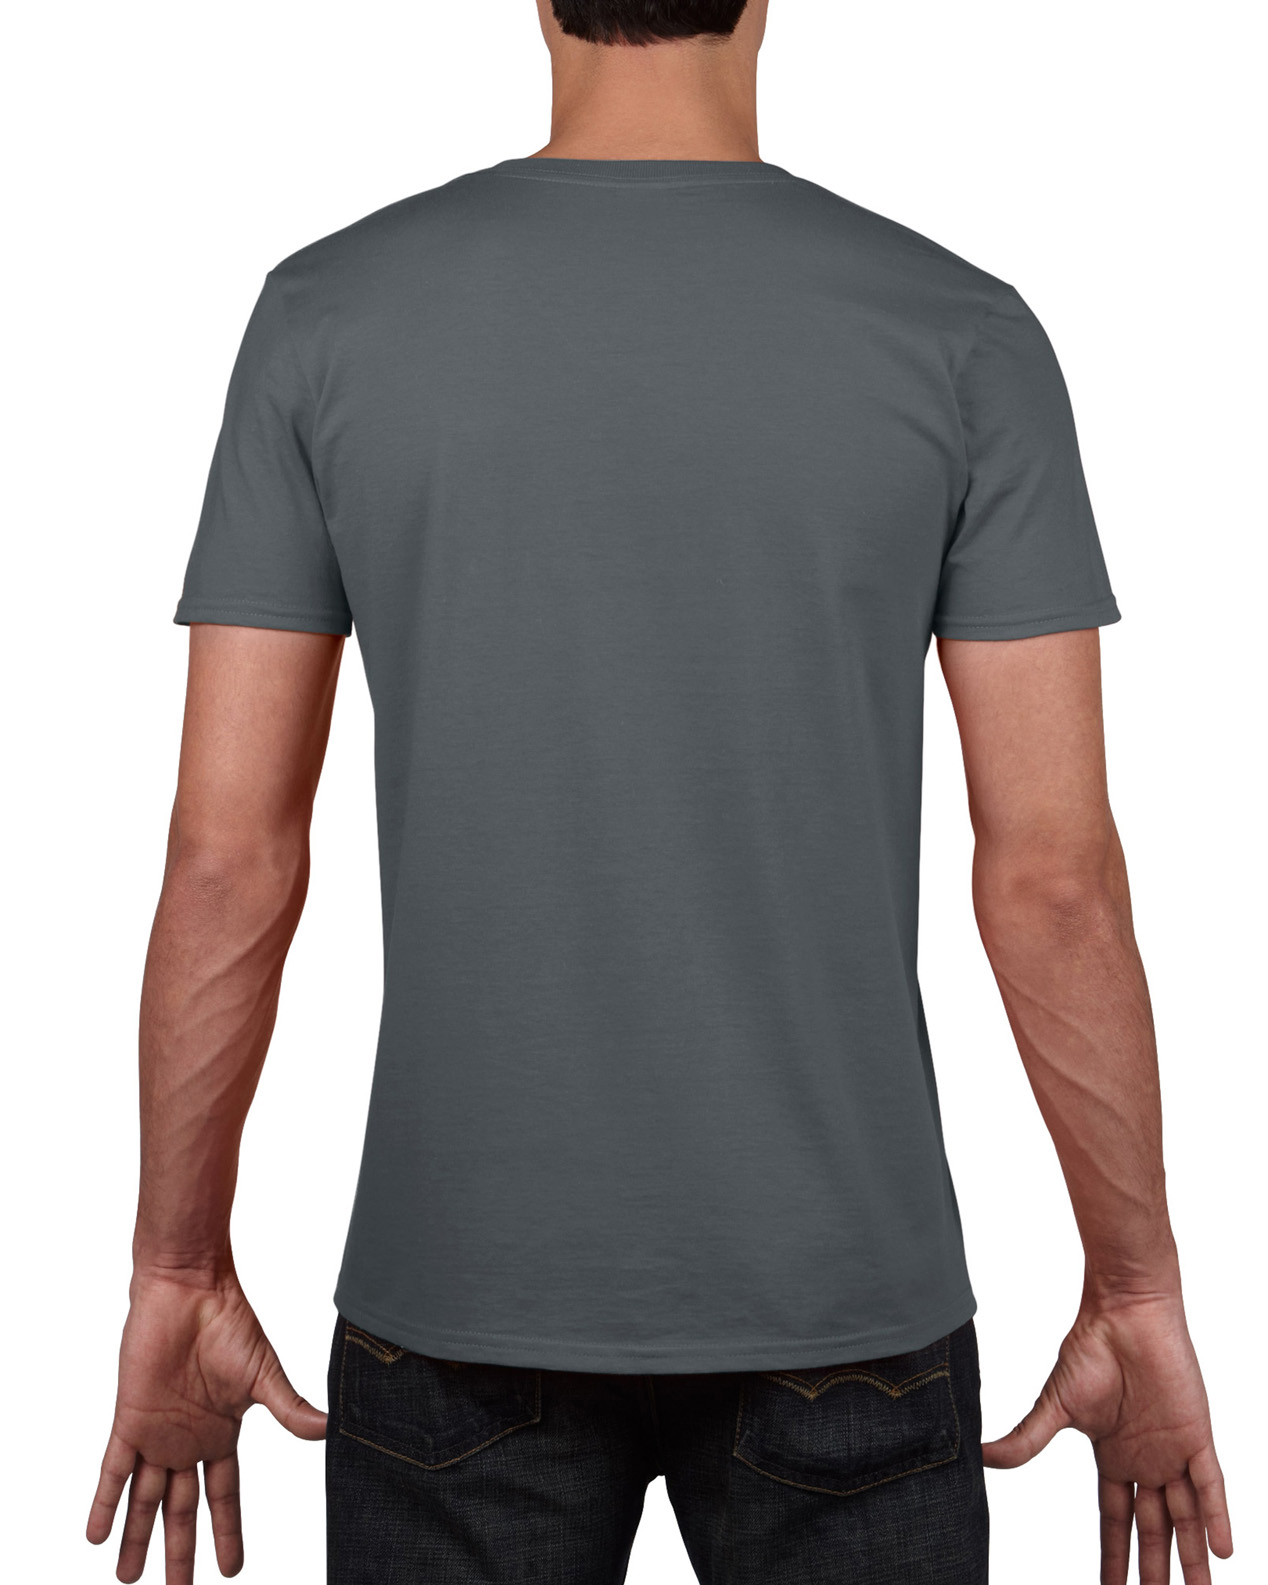 Charcoal/Ash Grey Taille XL 2 Pack Marque : GildanGildan G2400 T-shirt à manches longues en coton pour homme 